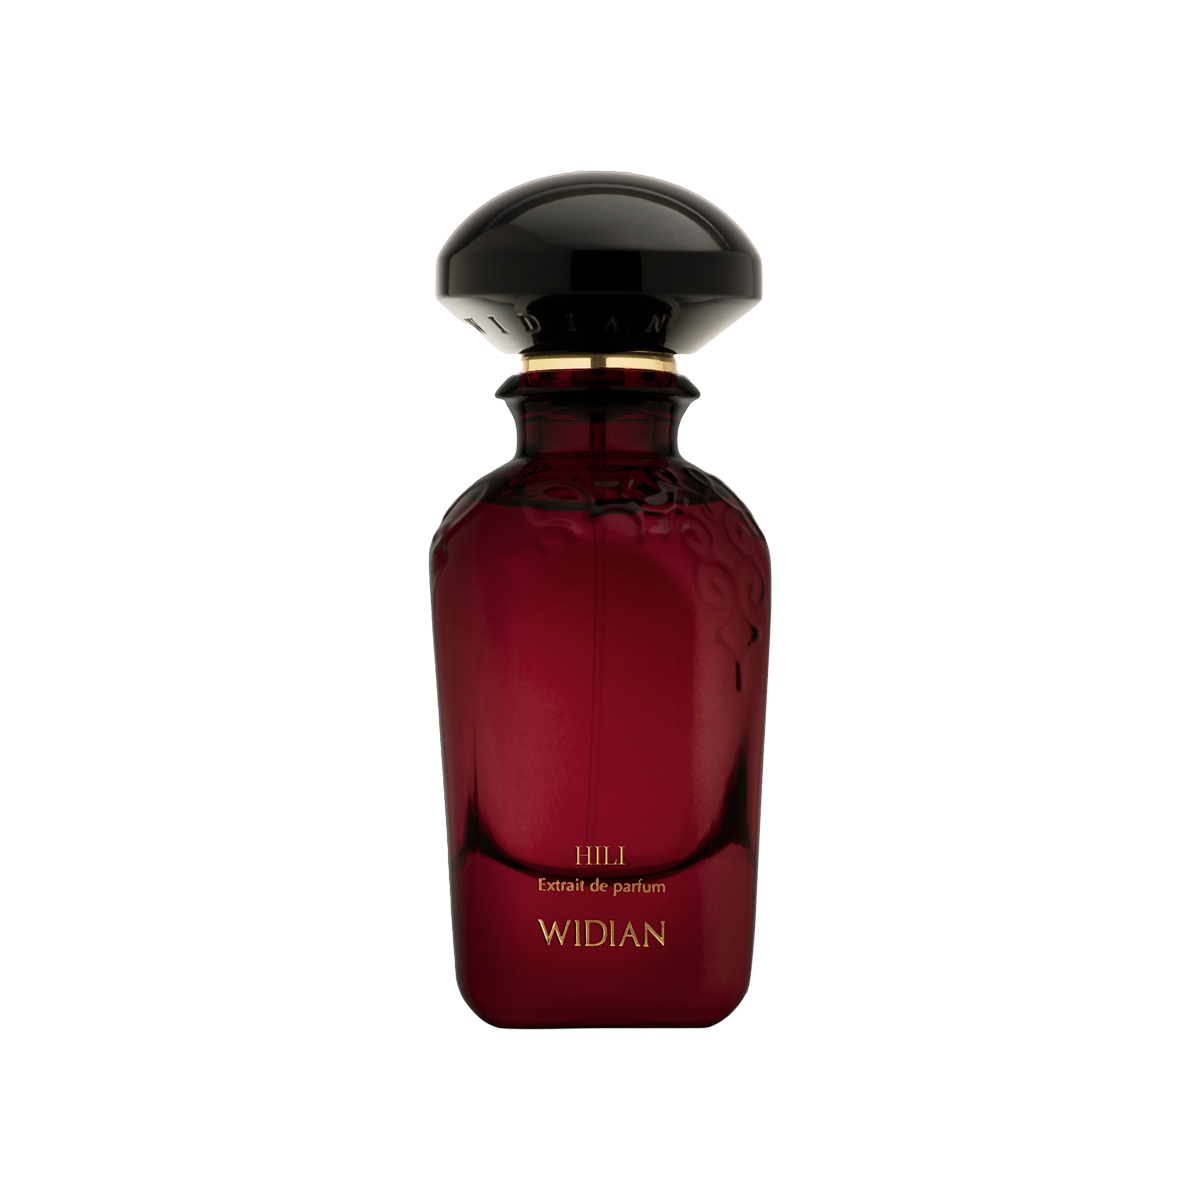 Widian - Hili Eau de Parfum